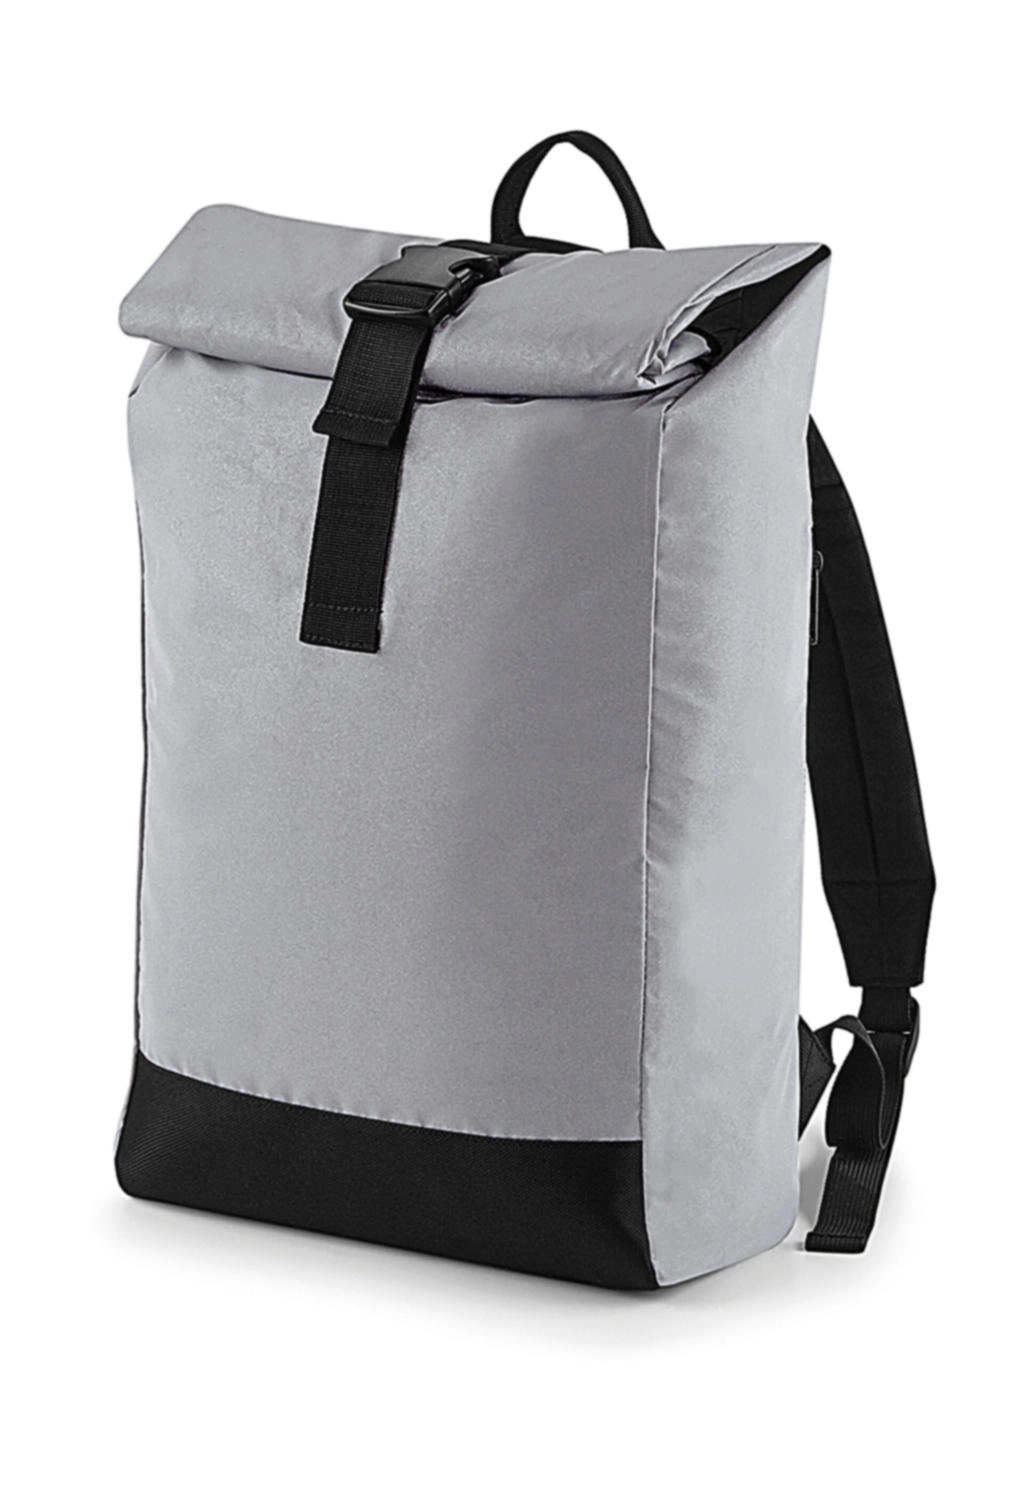 Reflective Roll-Top Backpack zum Besticken und Bedrucken in der Farbe Silver Reflective mit Ihren Logo, Schriftzug oder Motiv.